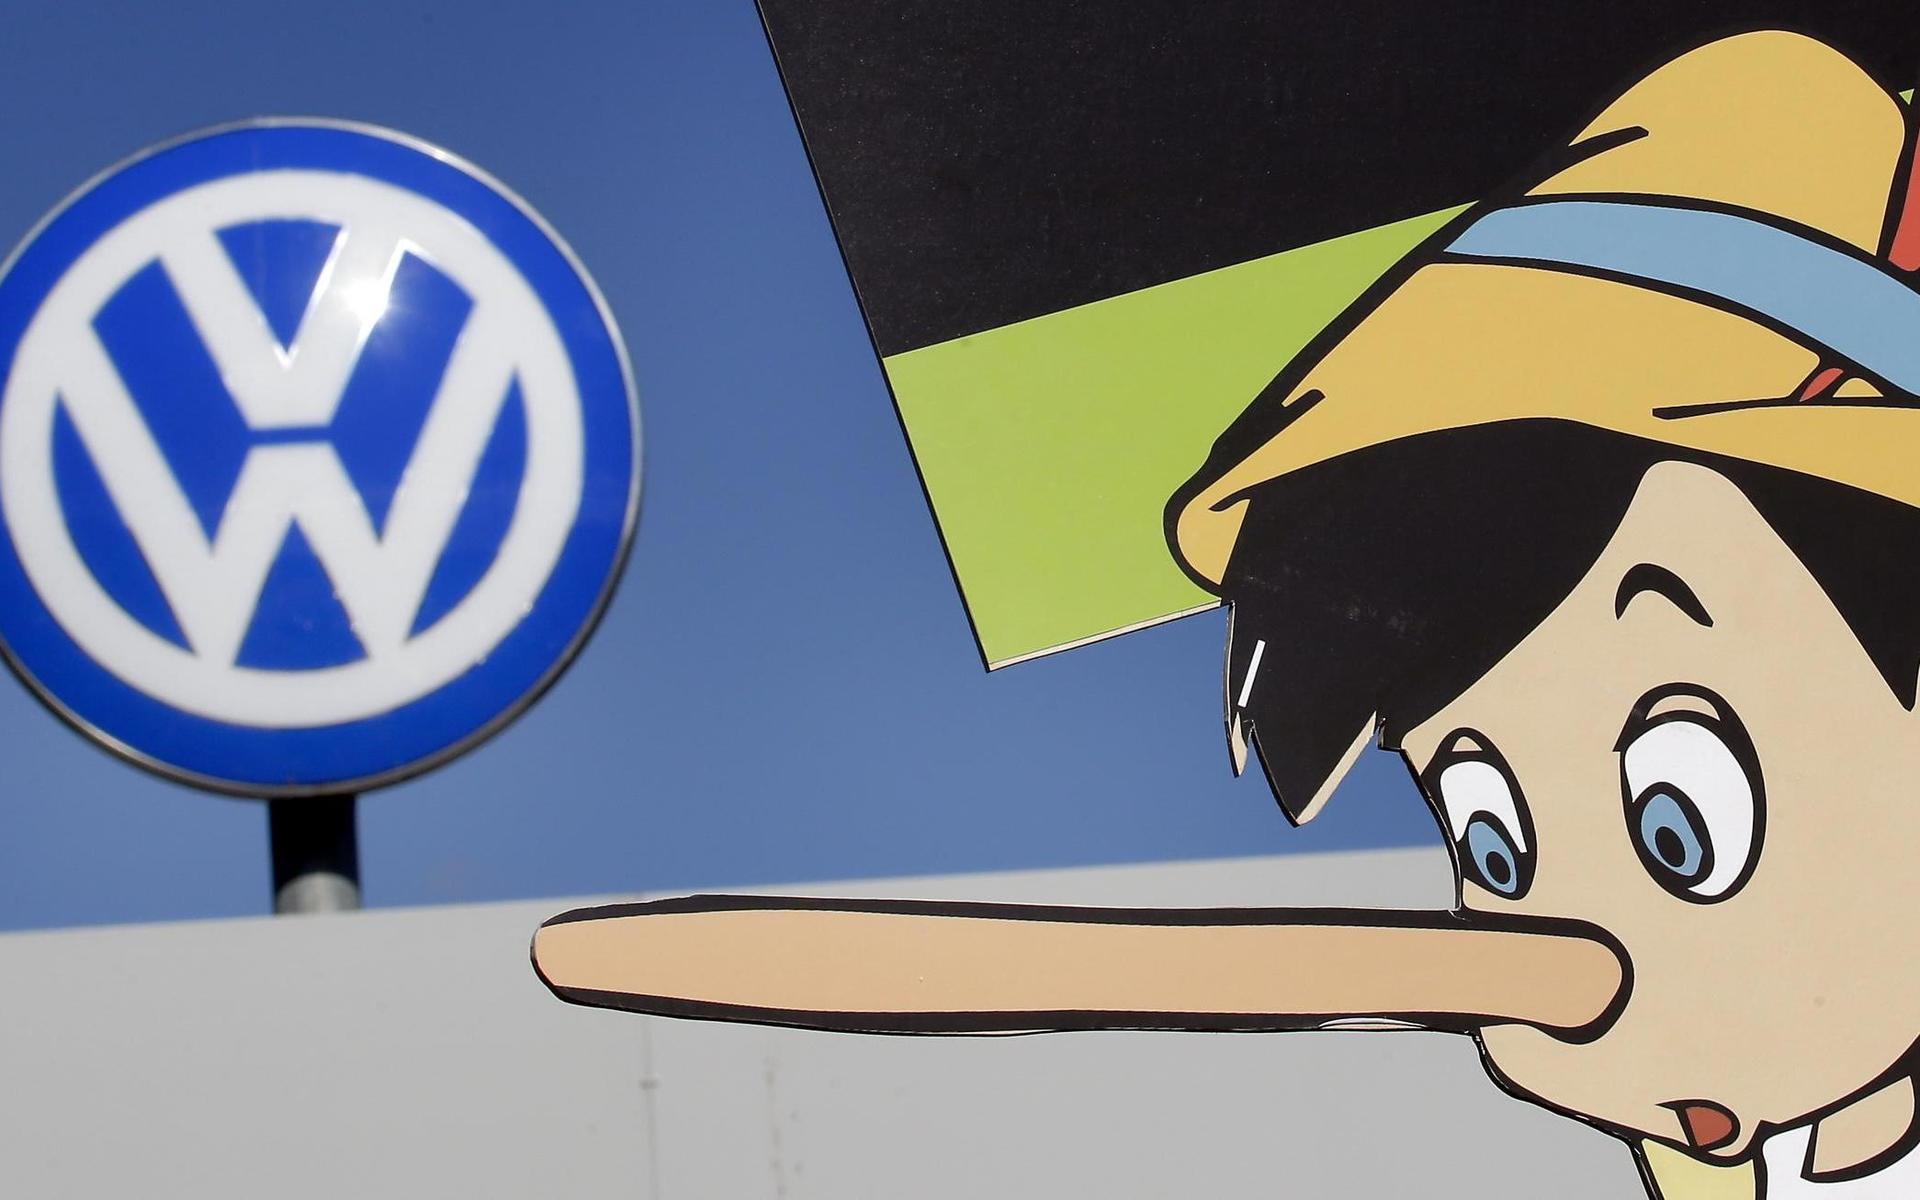 Volkswagen hävdade att de skulle byta namn på elbilar i USA till Voltswagen, ett tidigt aprilskämt som redan mötts av frän kritik. Bilden är en affisch gjord av Greenpeace under &quot;dieselgate&quot; 2015 då Volkswagen ertappades med att ha fabricerat fakta om utsläppsmängder från deras dieselbilar.